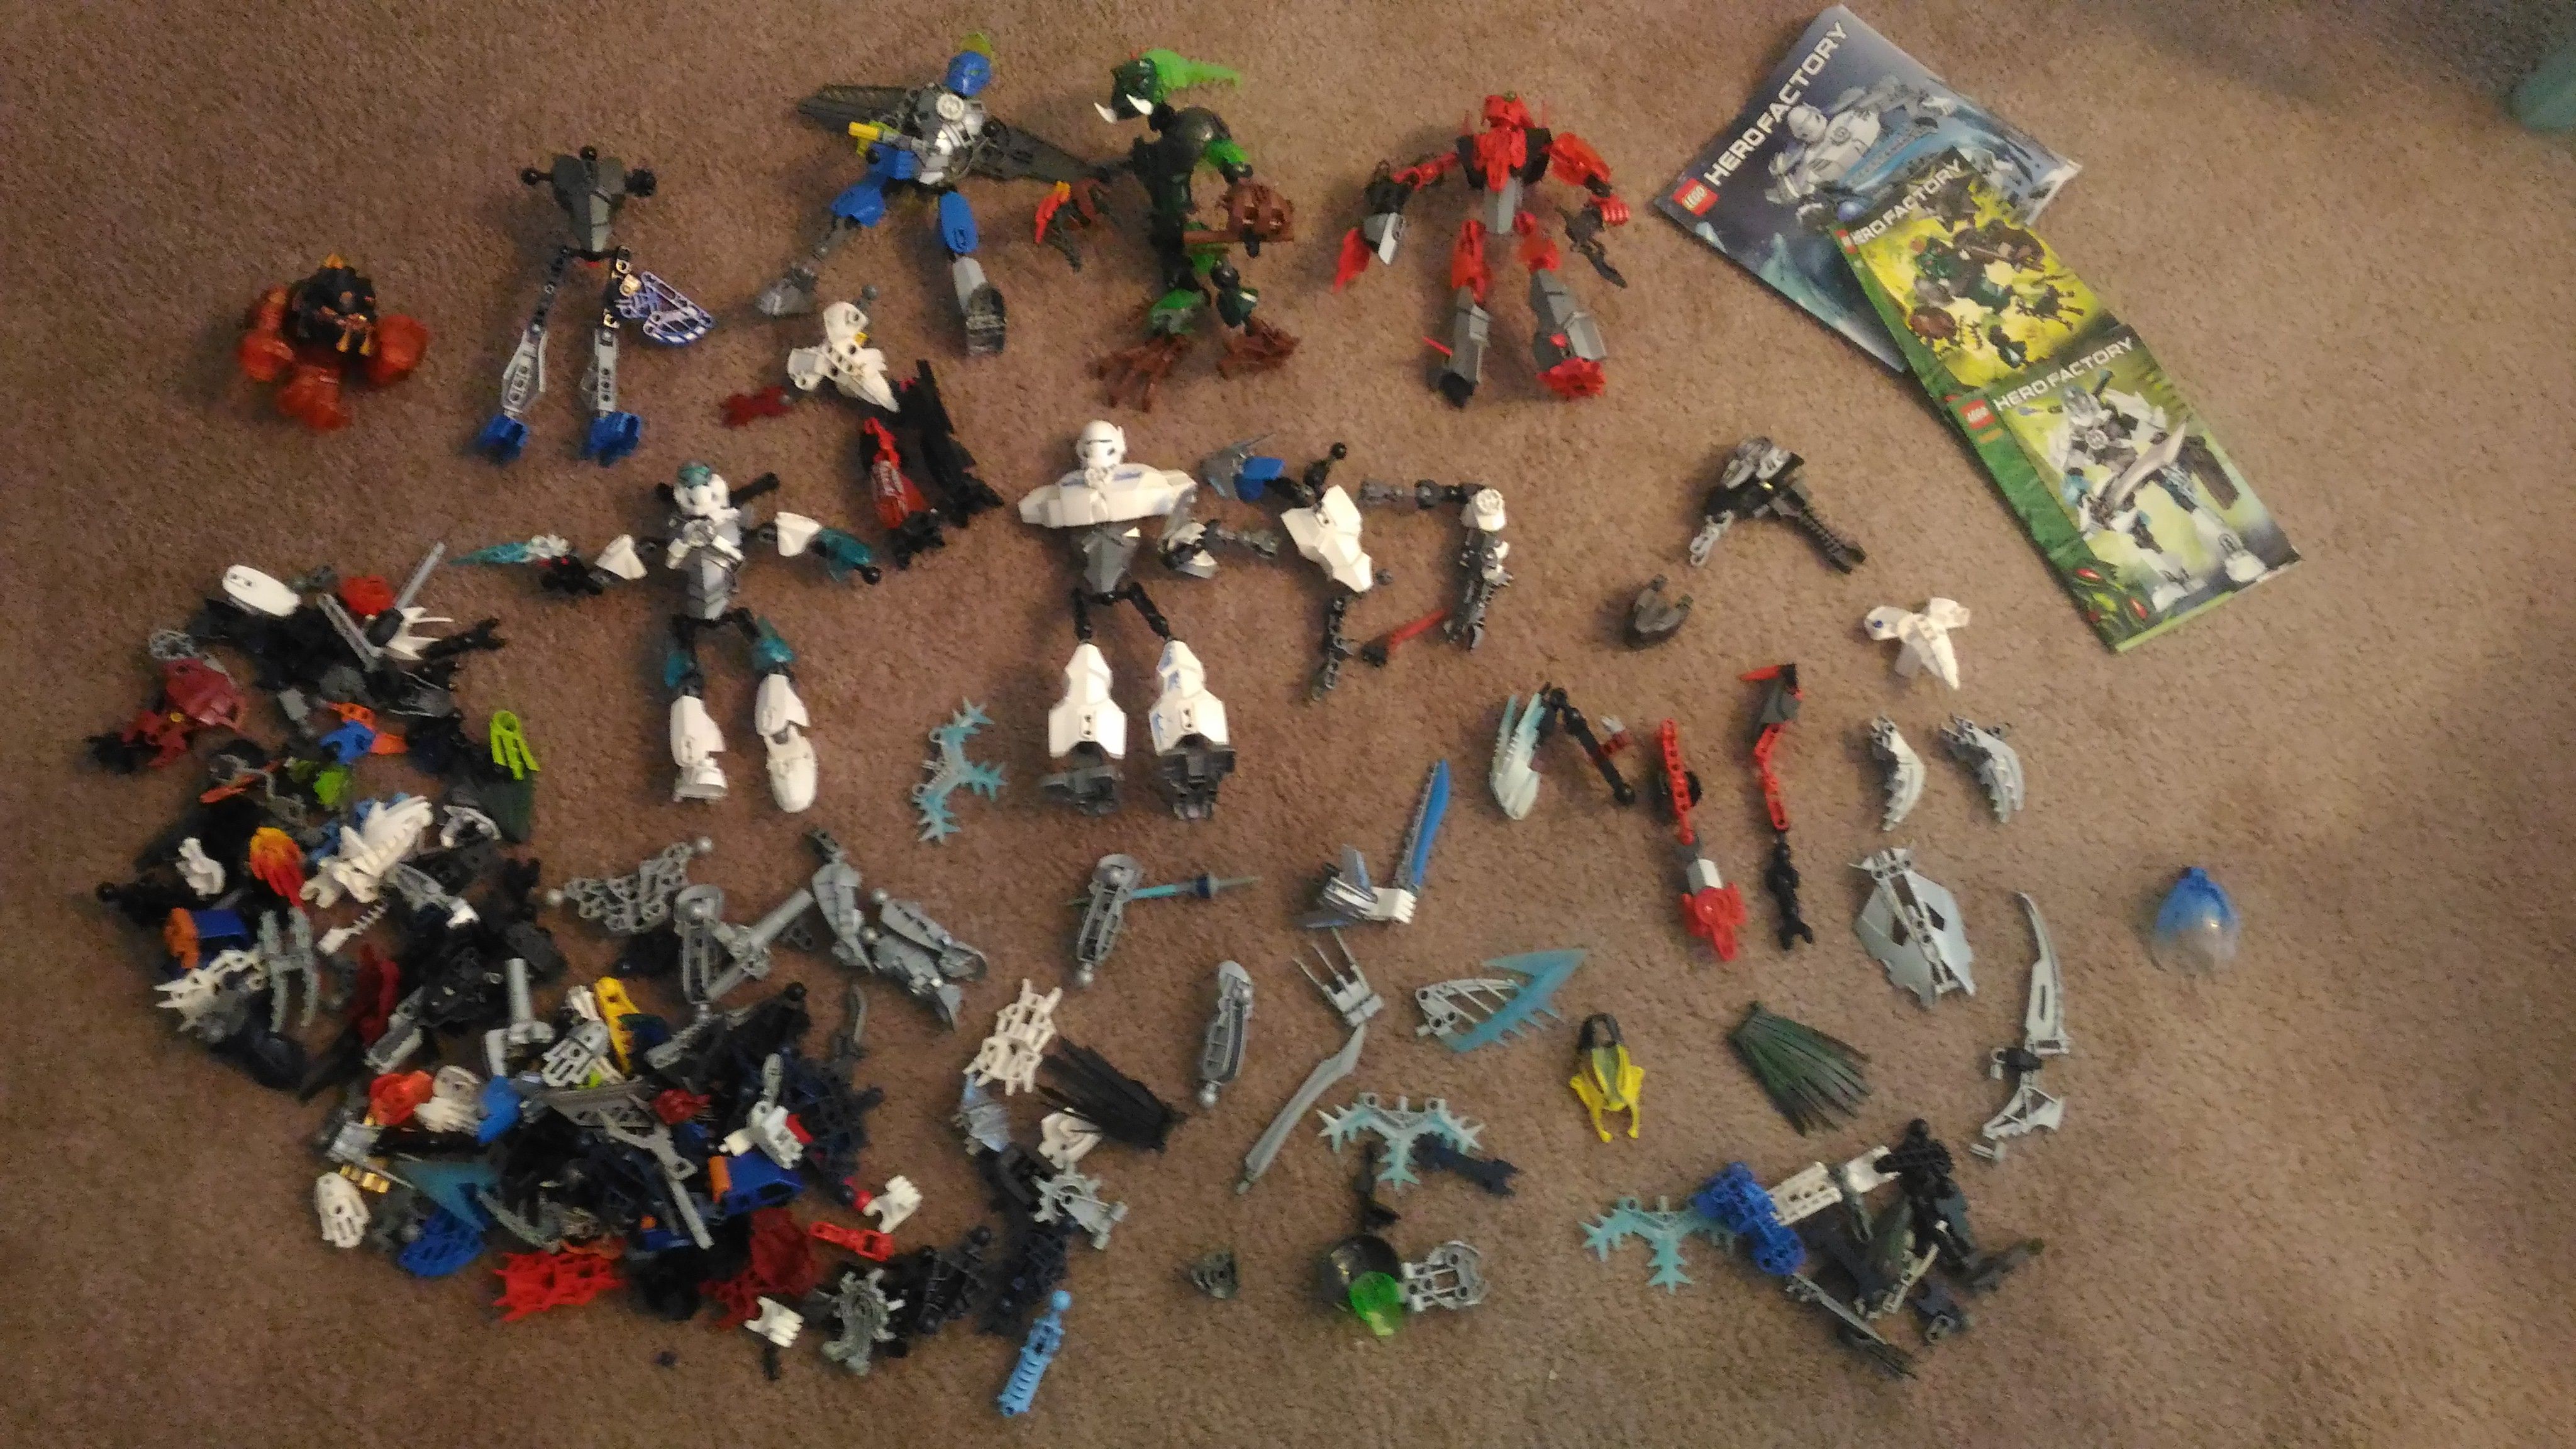 HUGE collection of LEGO HERO & BIONICLE!